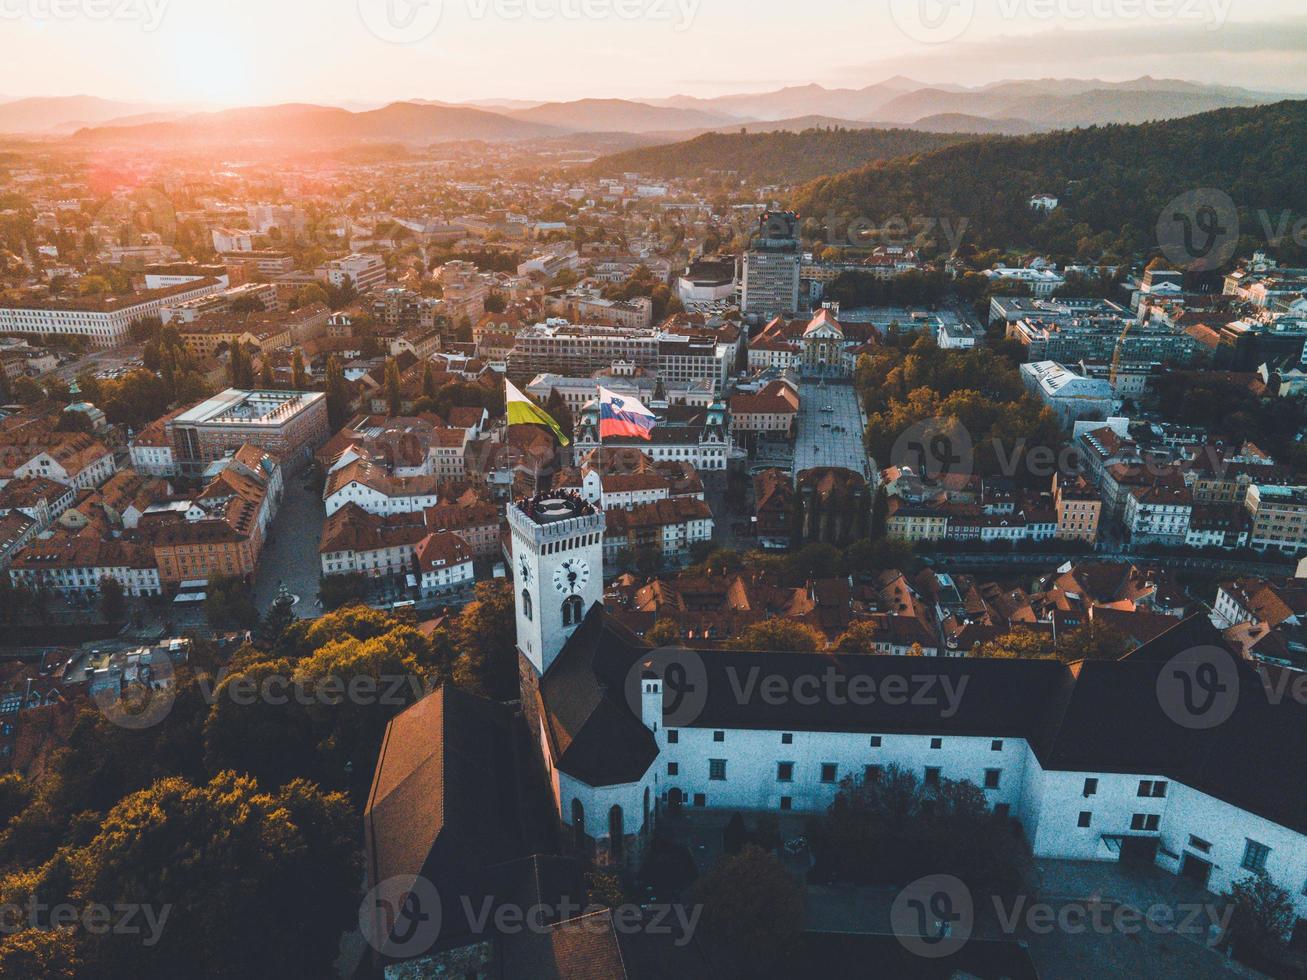 Drönare visningar av ljubljana slott i slovenien foto